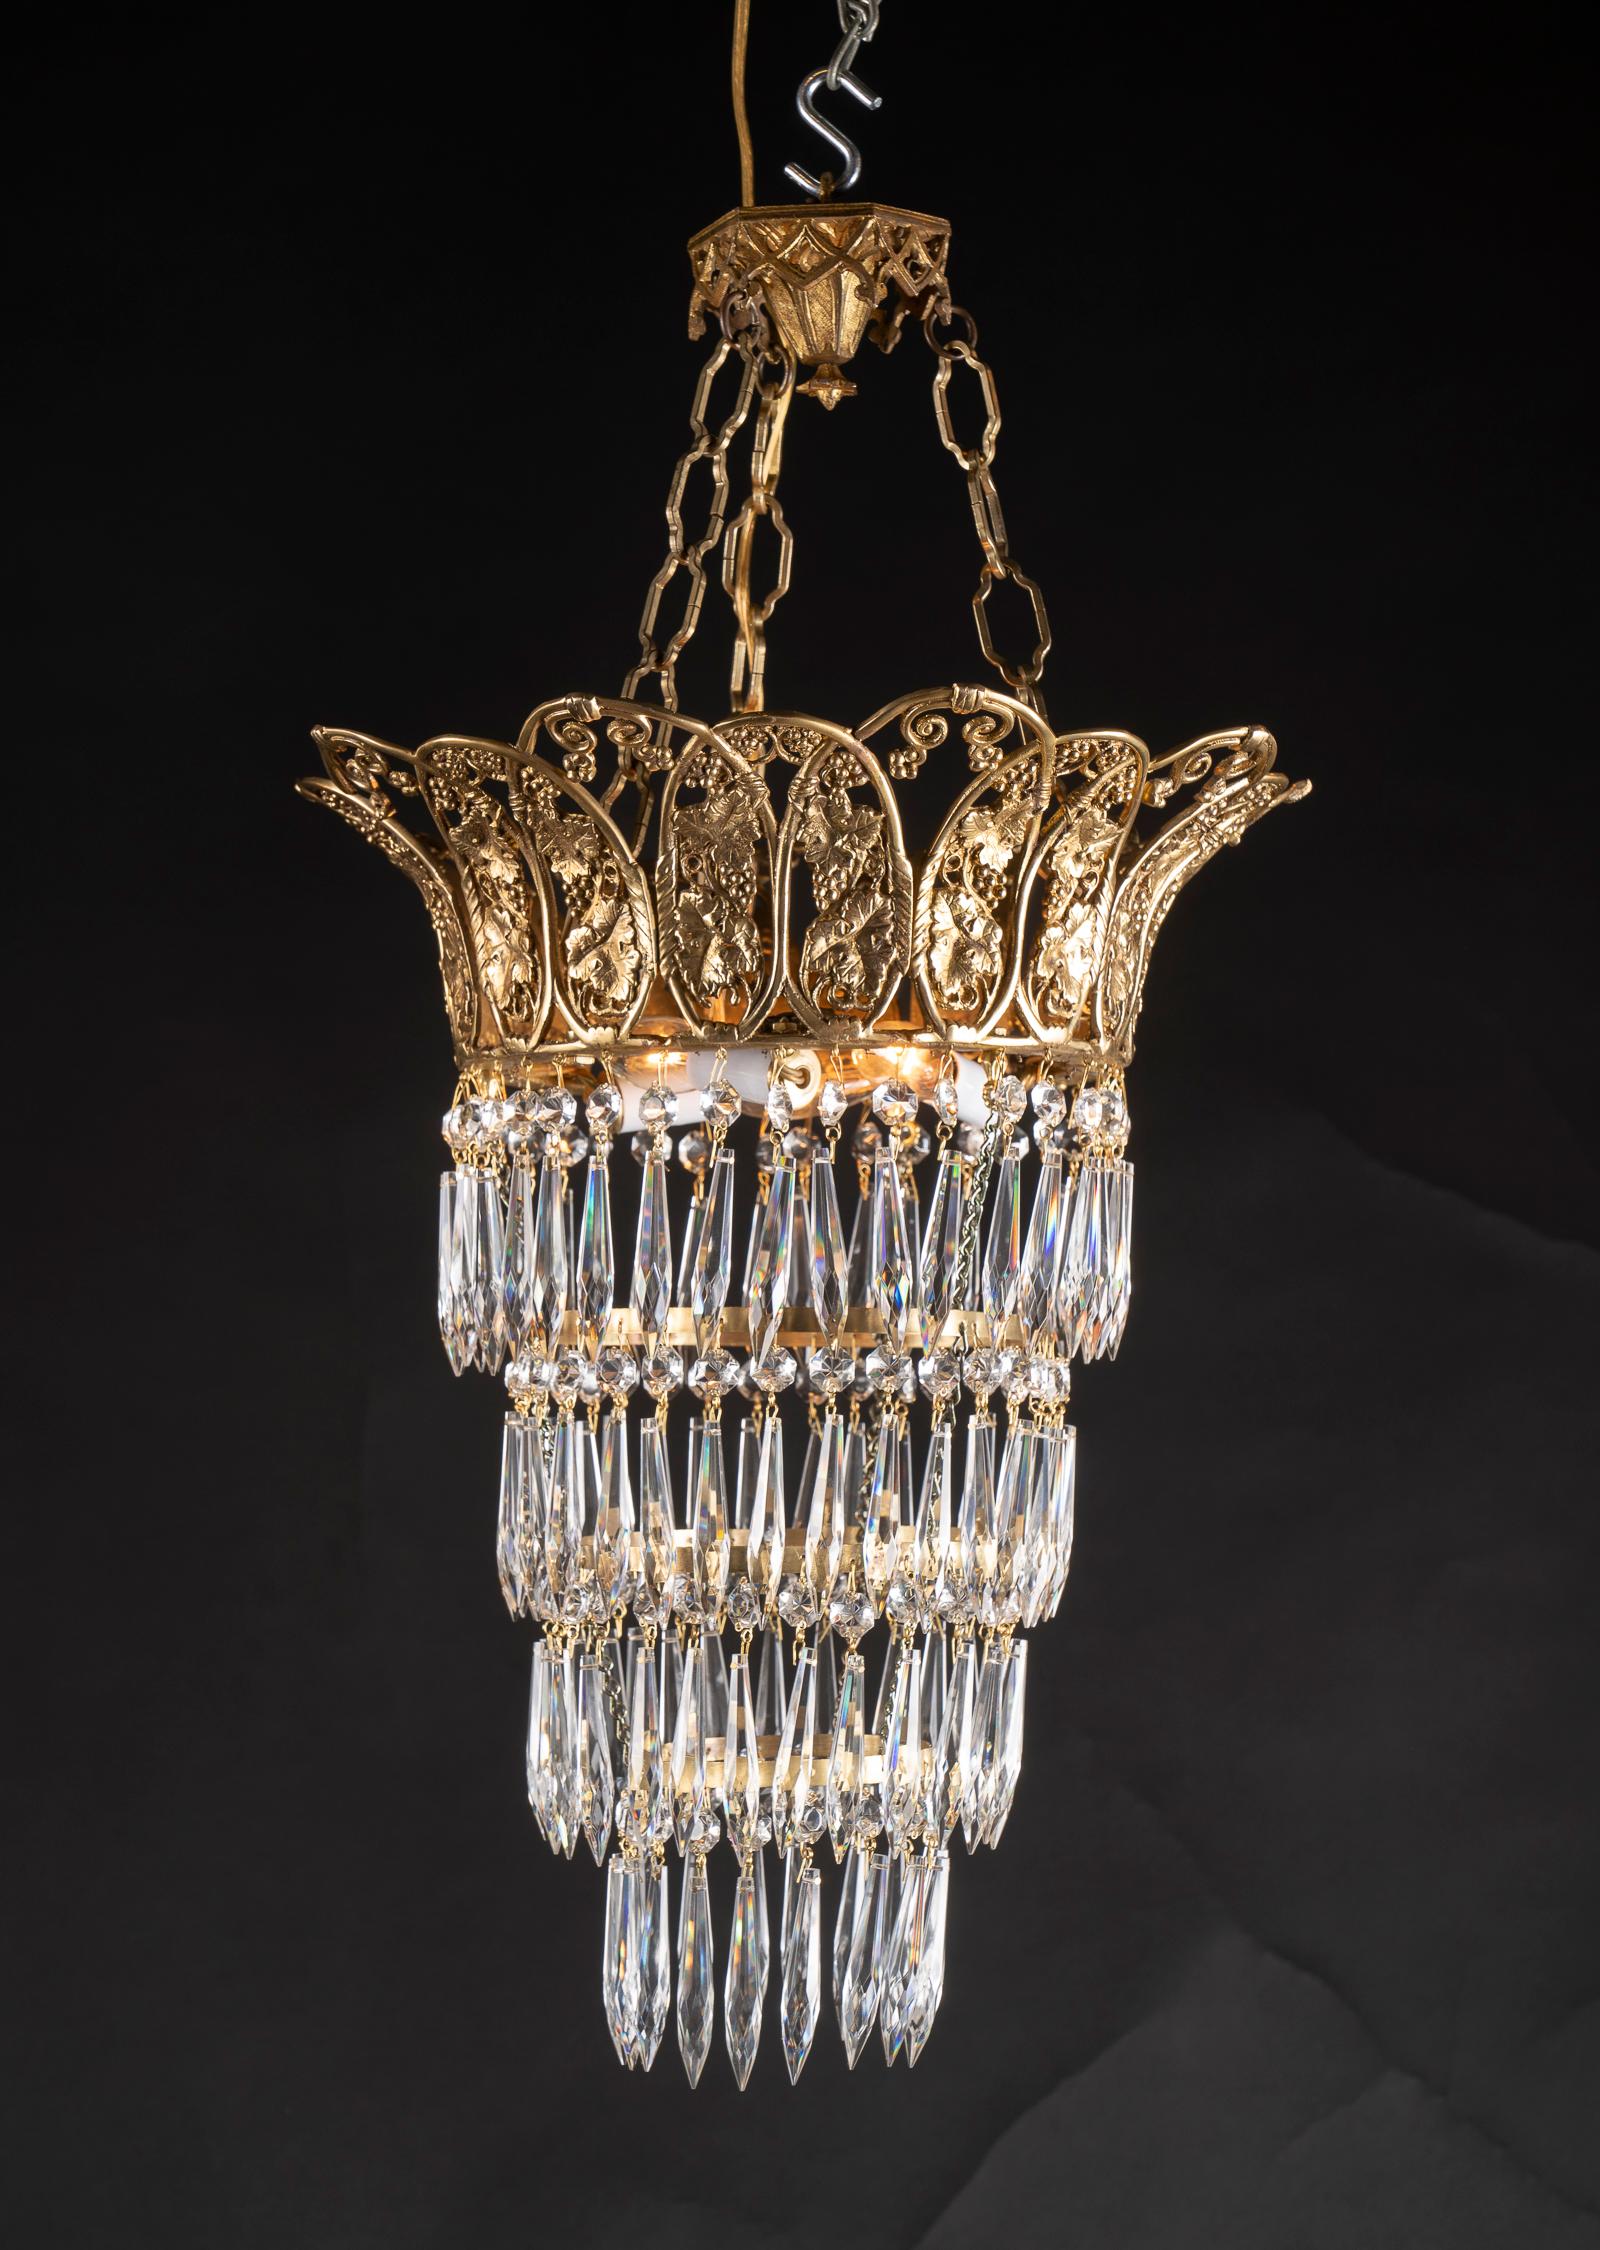 Dieses wunderschöne Paar von Kronleuchtern im Louis XVI-Stil besteht aus vier kugelförmigen Kristallreihen, die an einer detaillierten Bronzekrone aufgehängt sind. Die Krone trägt ein Traubenmotiv in Anlehnung an Bacchus, den Gott des Weines, und